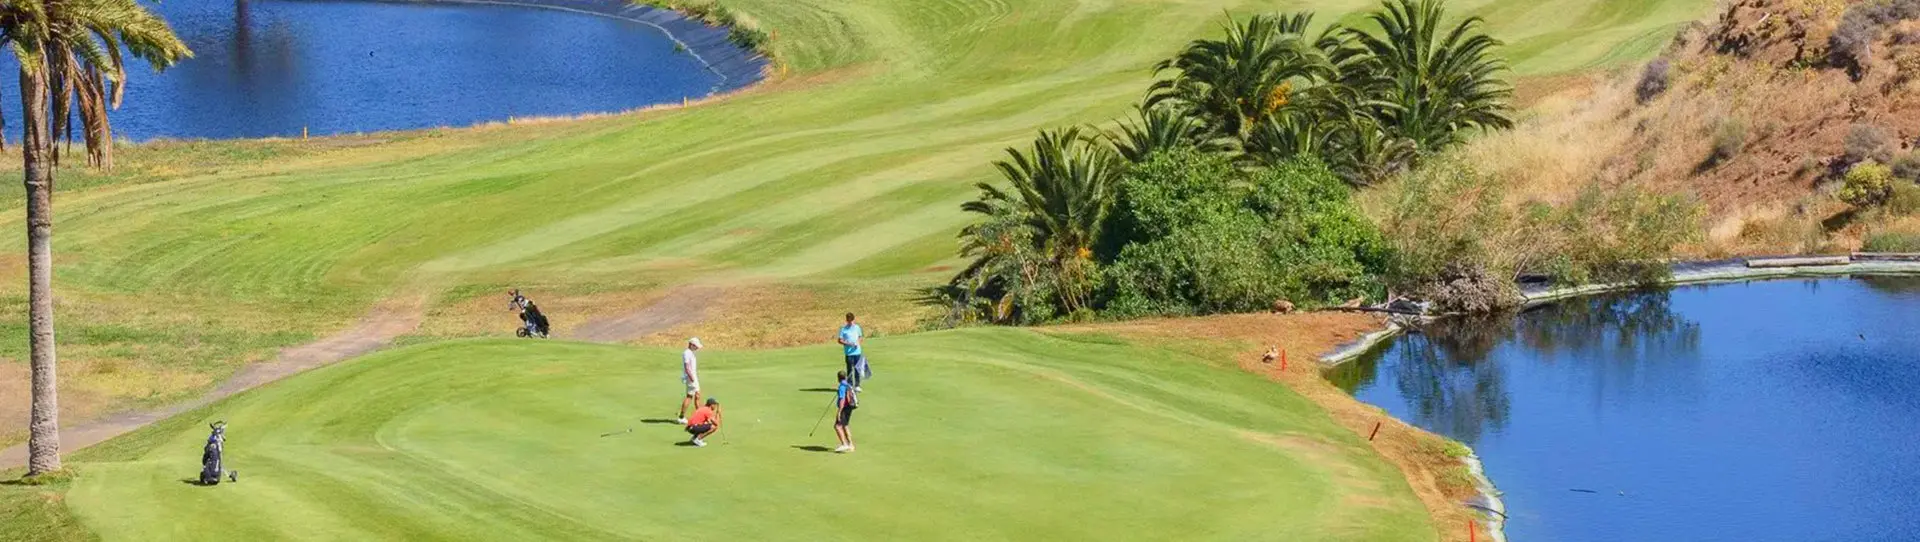 Spain golf courses - El Cortijo Club de Campo - Photo 3